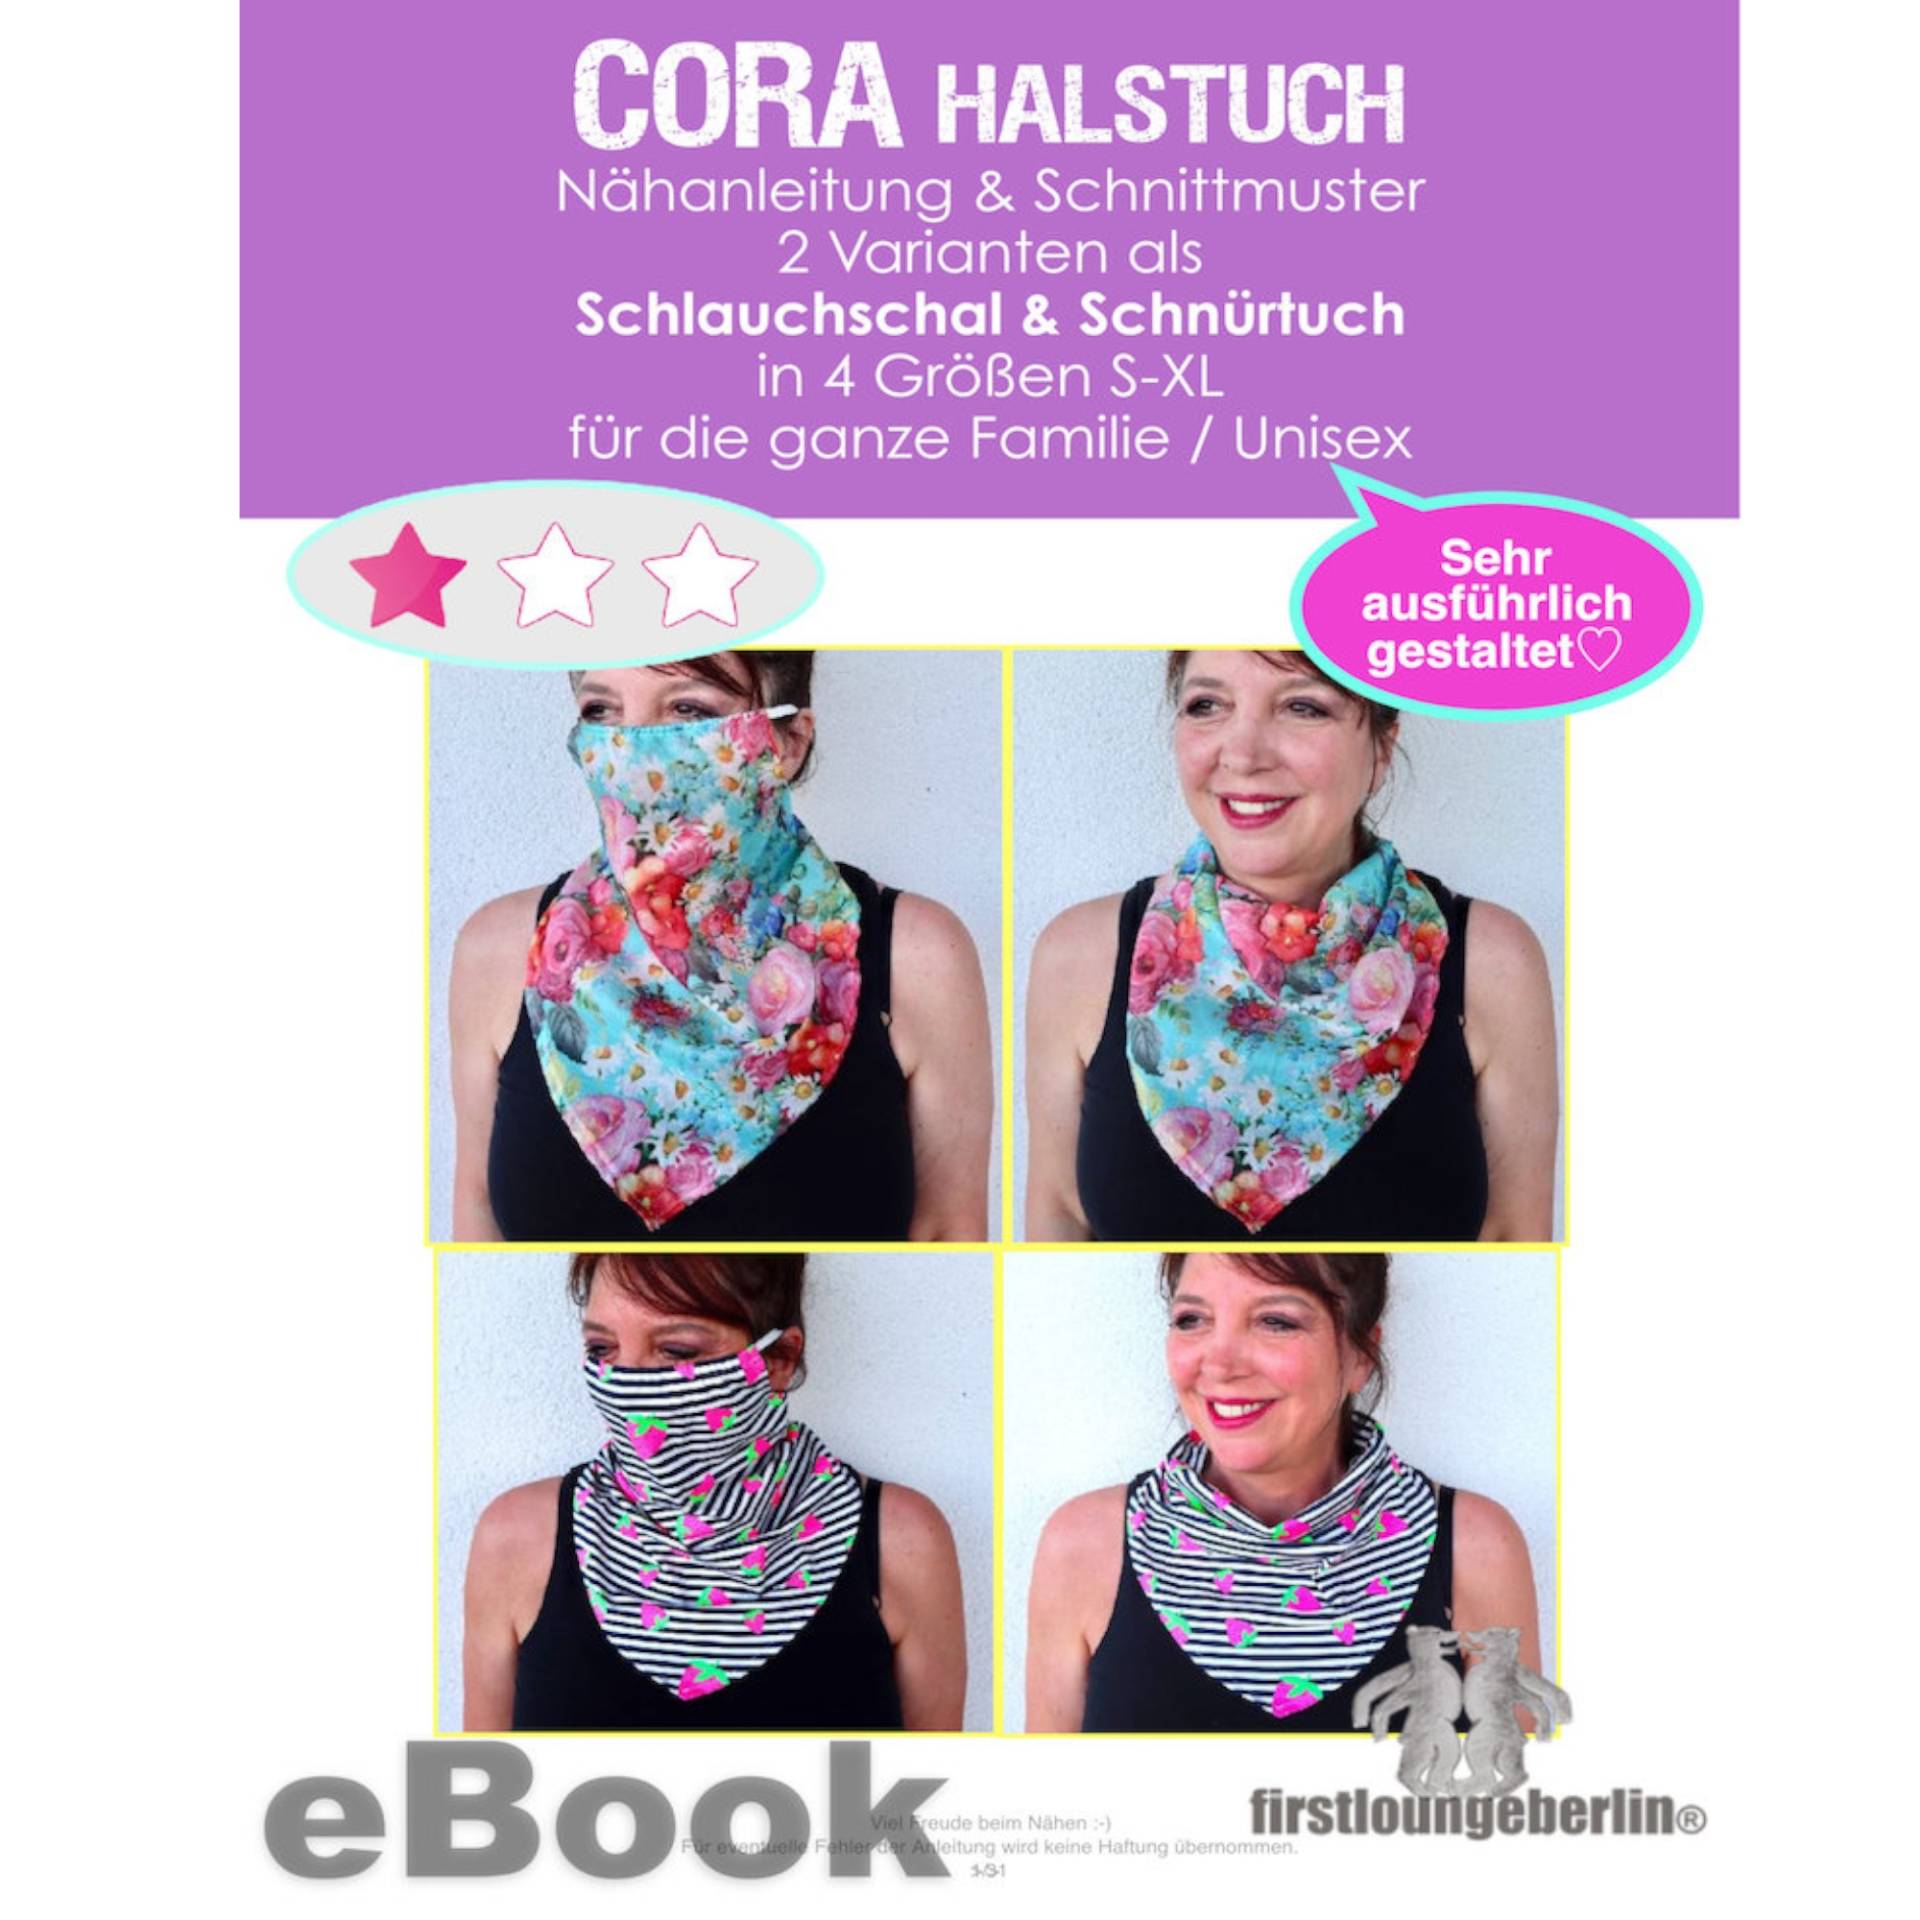 E-Book Firstlounge Berlin Halstuch Cora von Stoffe Hemmers